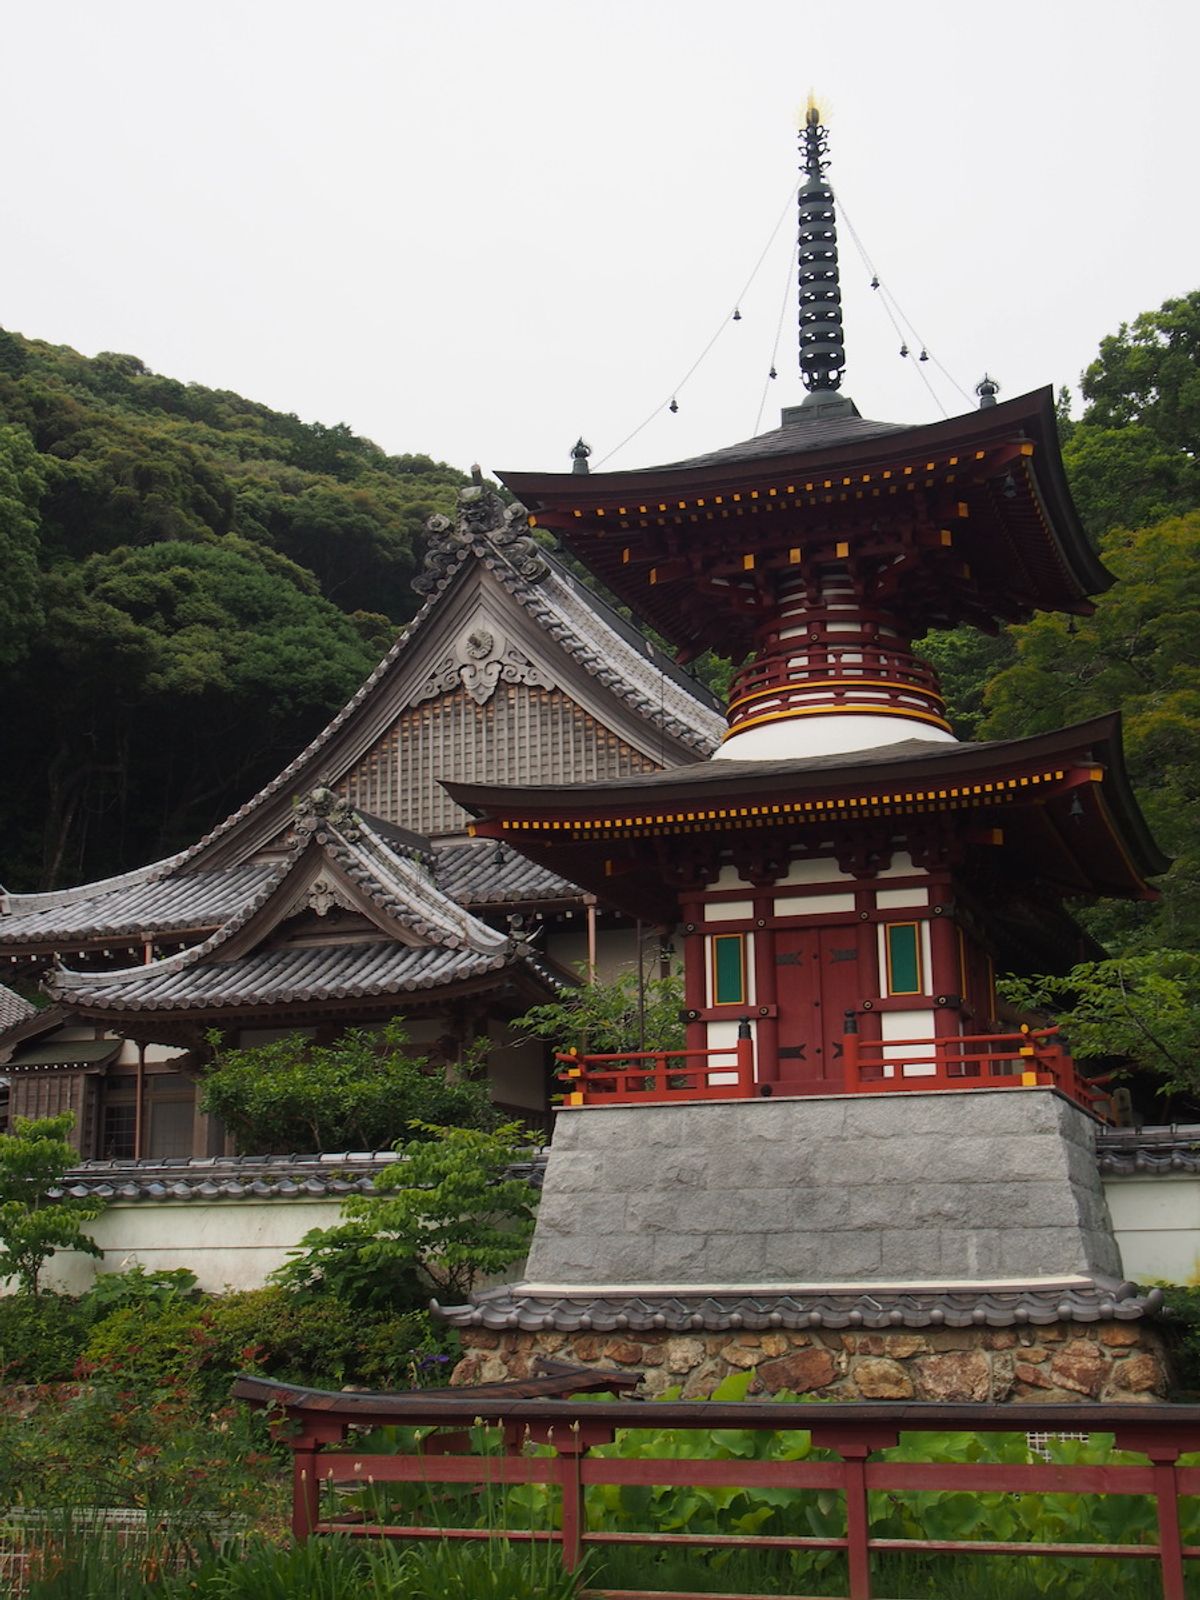 Temple 36 – Shoryuji